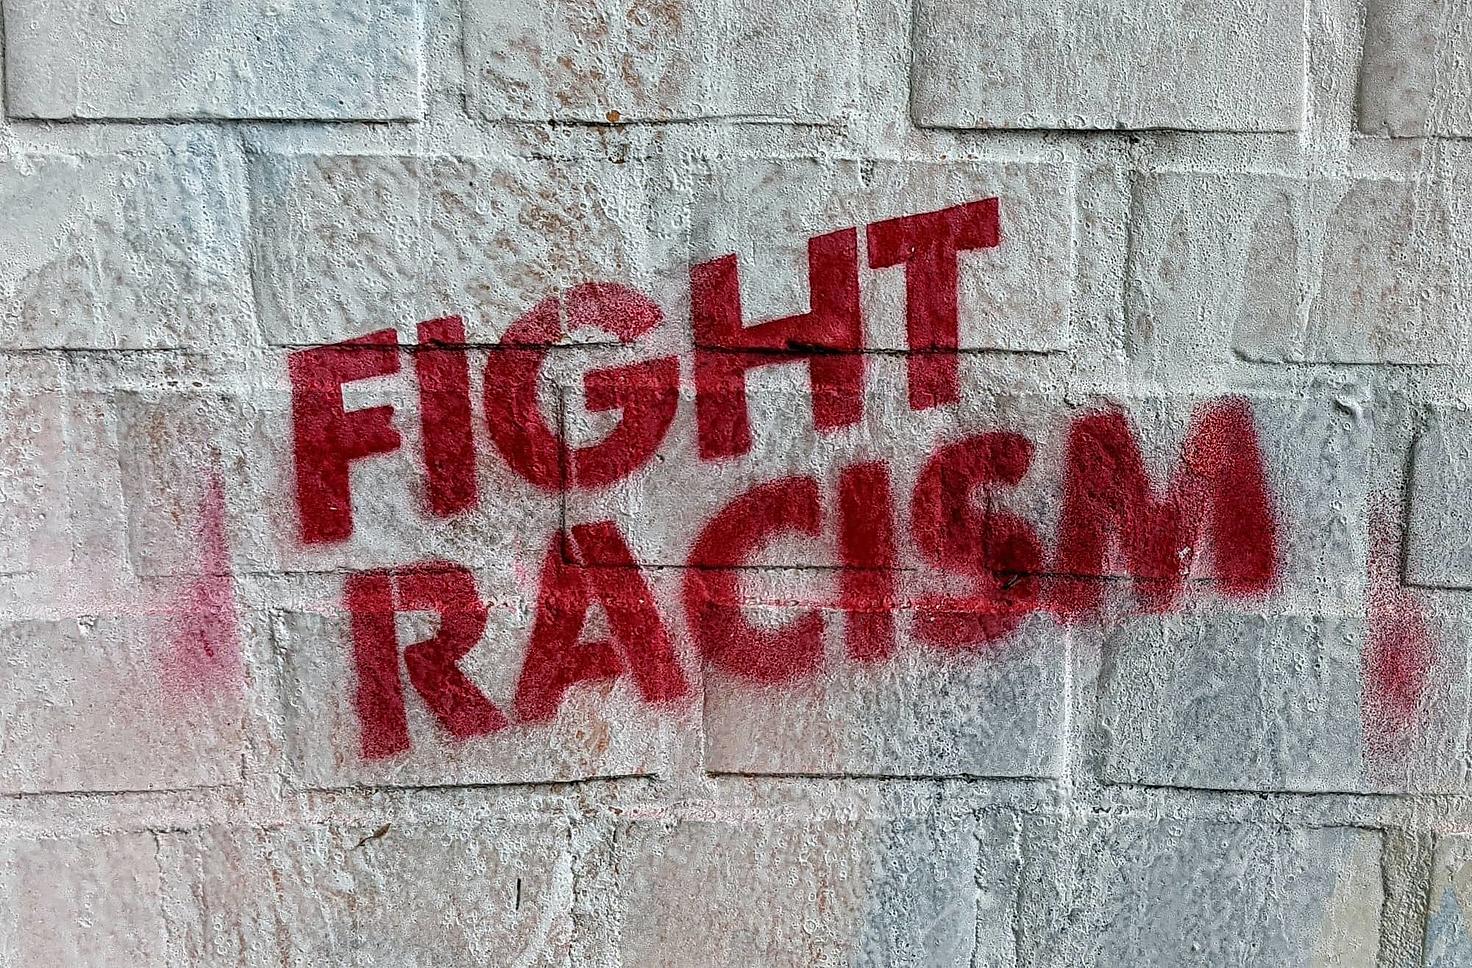 Asociaciones de Durangaldea organizan una concentración y talleres en contra del racismo